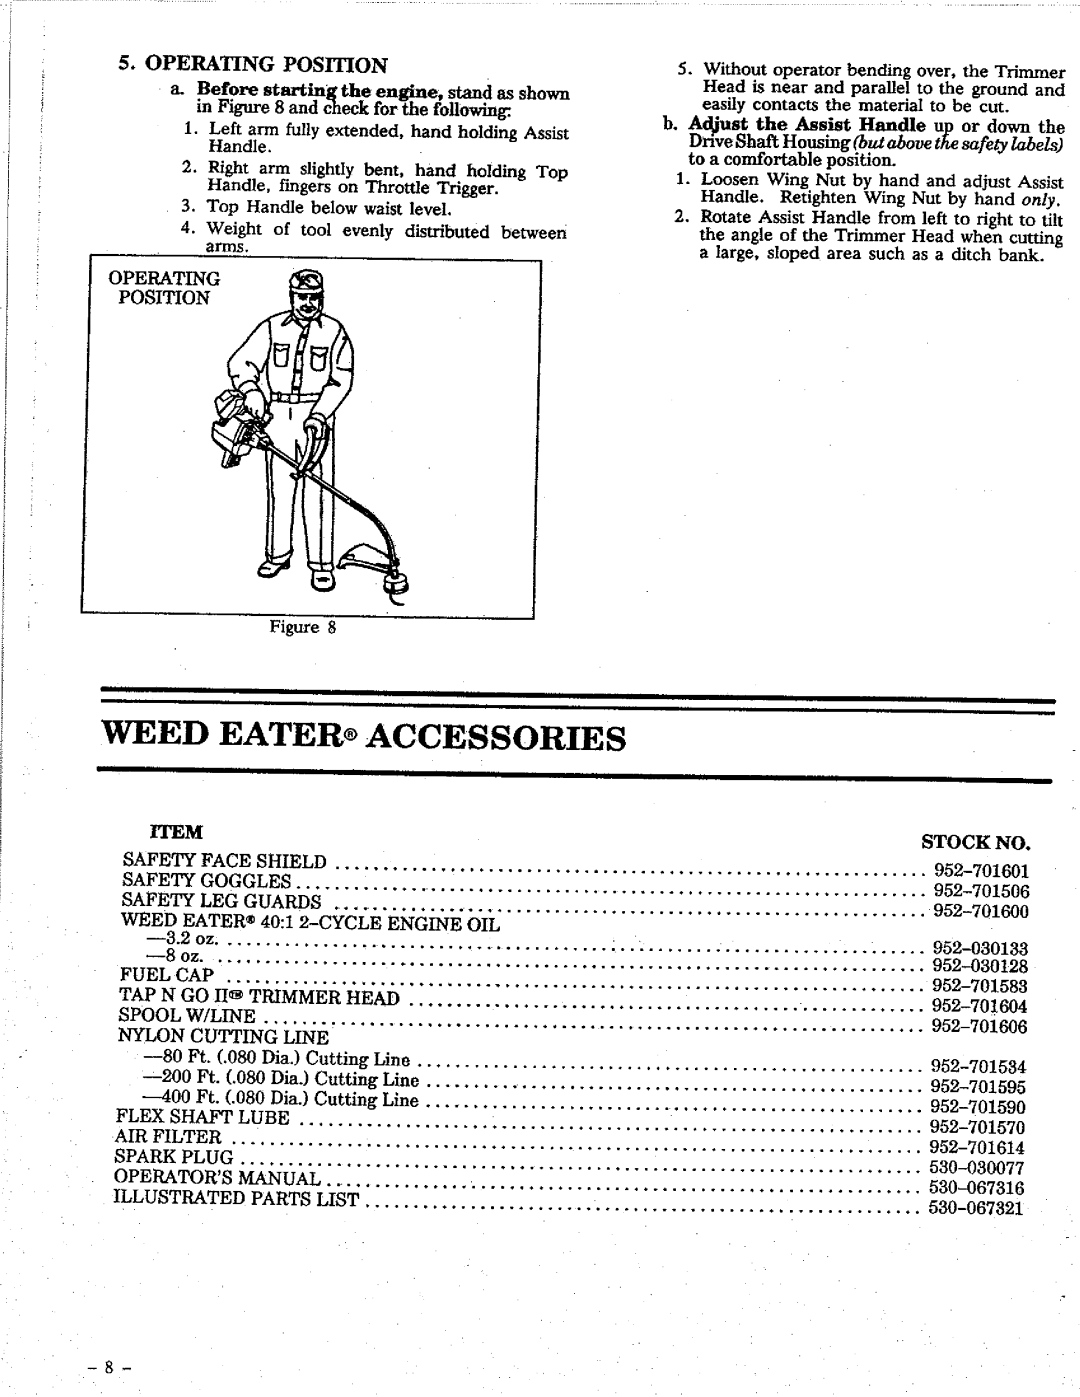 Weed Eater GTI 15 manual 